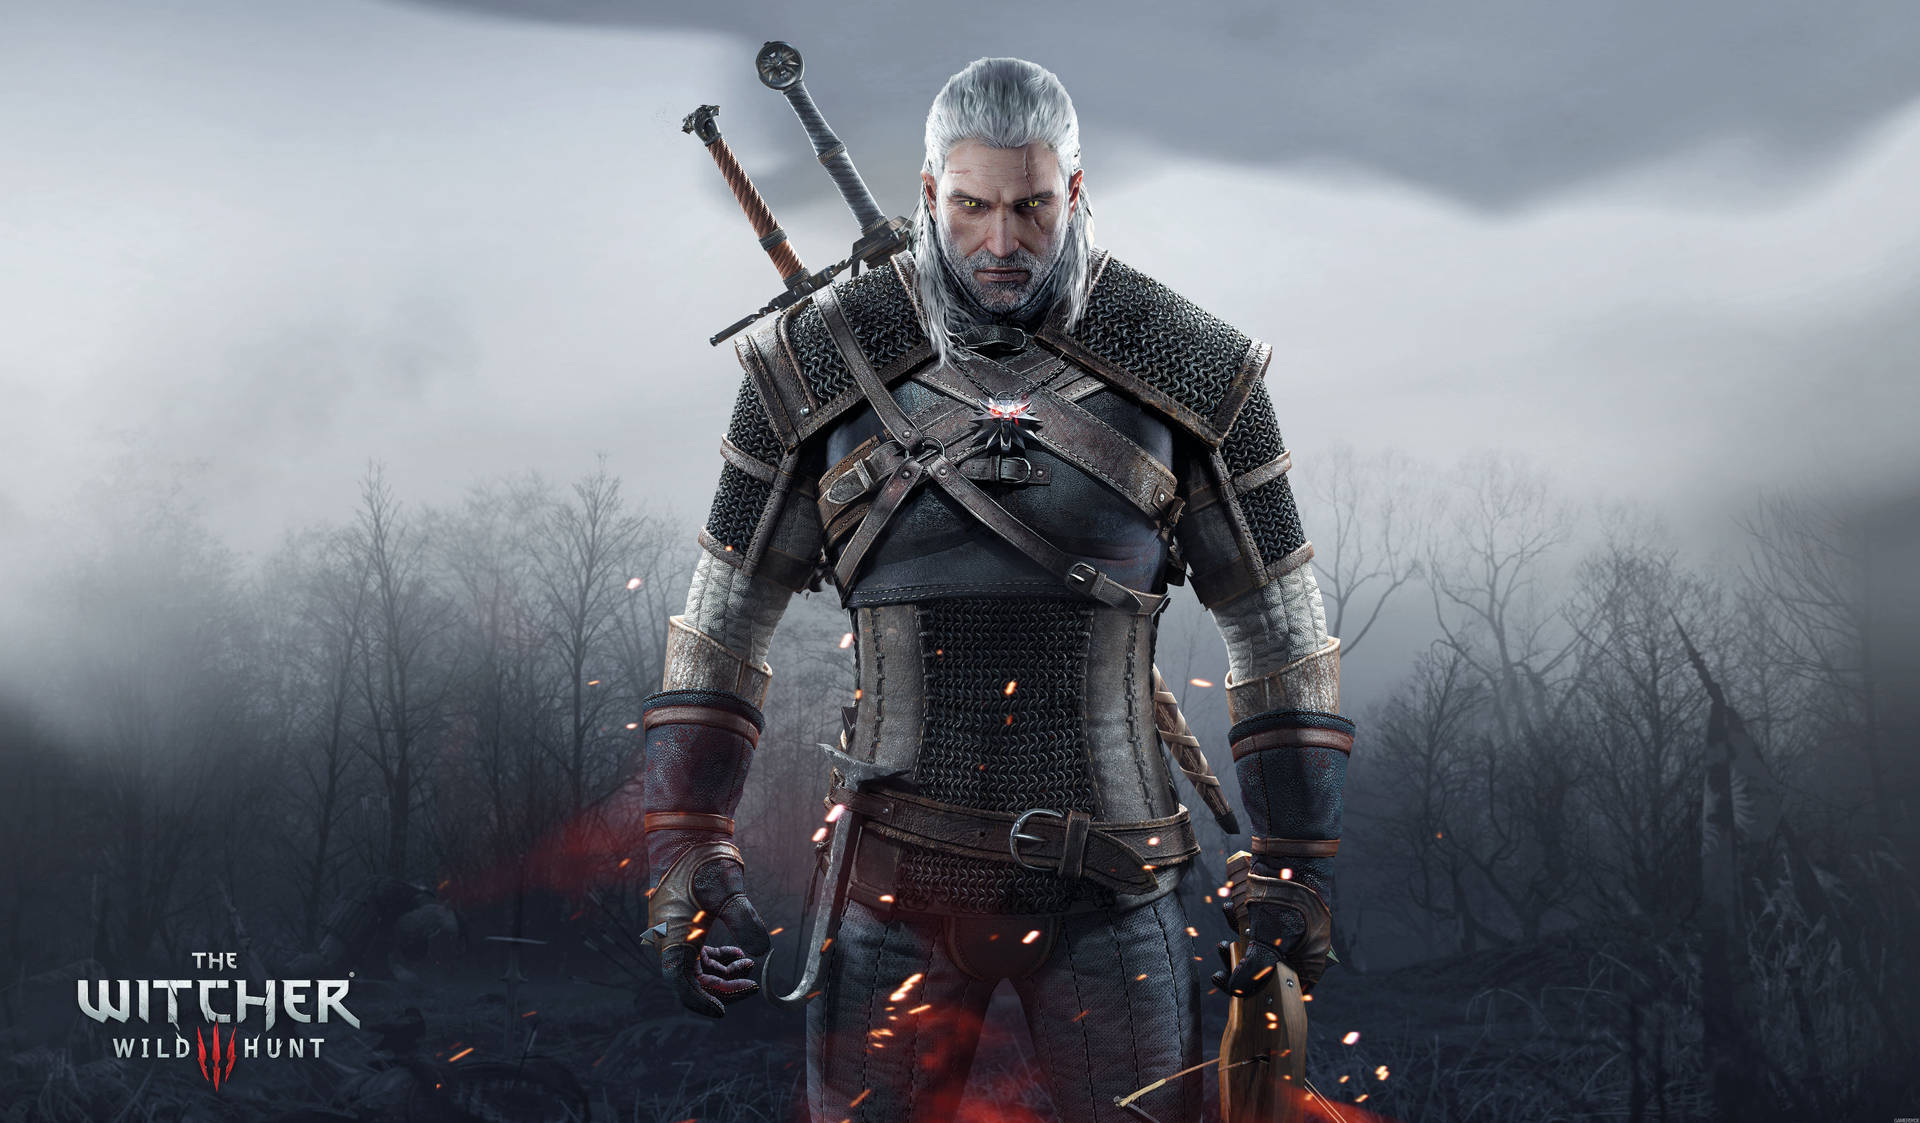 Witcher4k: Geralt Trägt Mittelalterliche Rüstung. Wallpaper